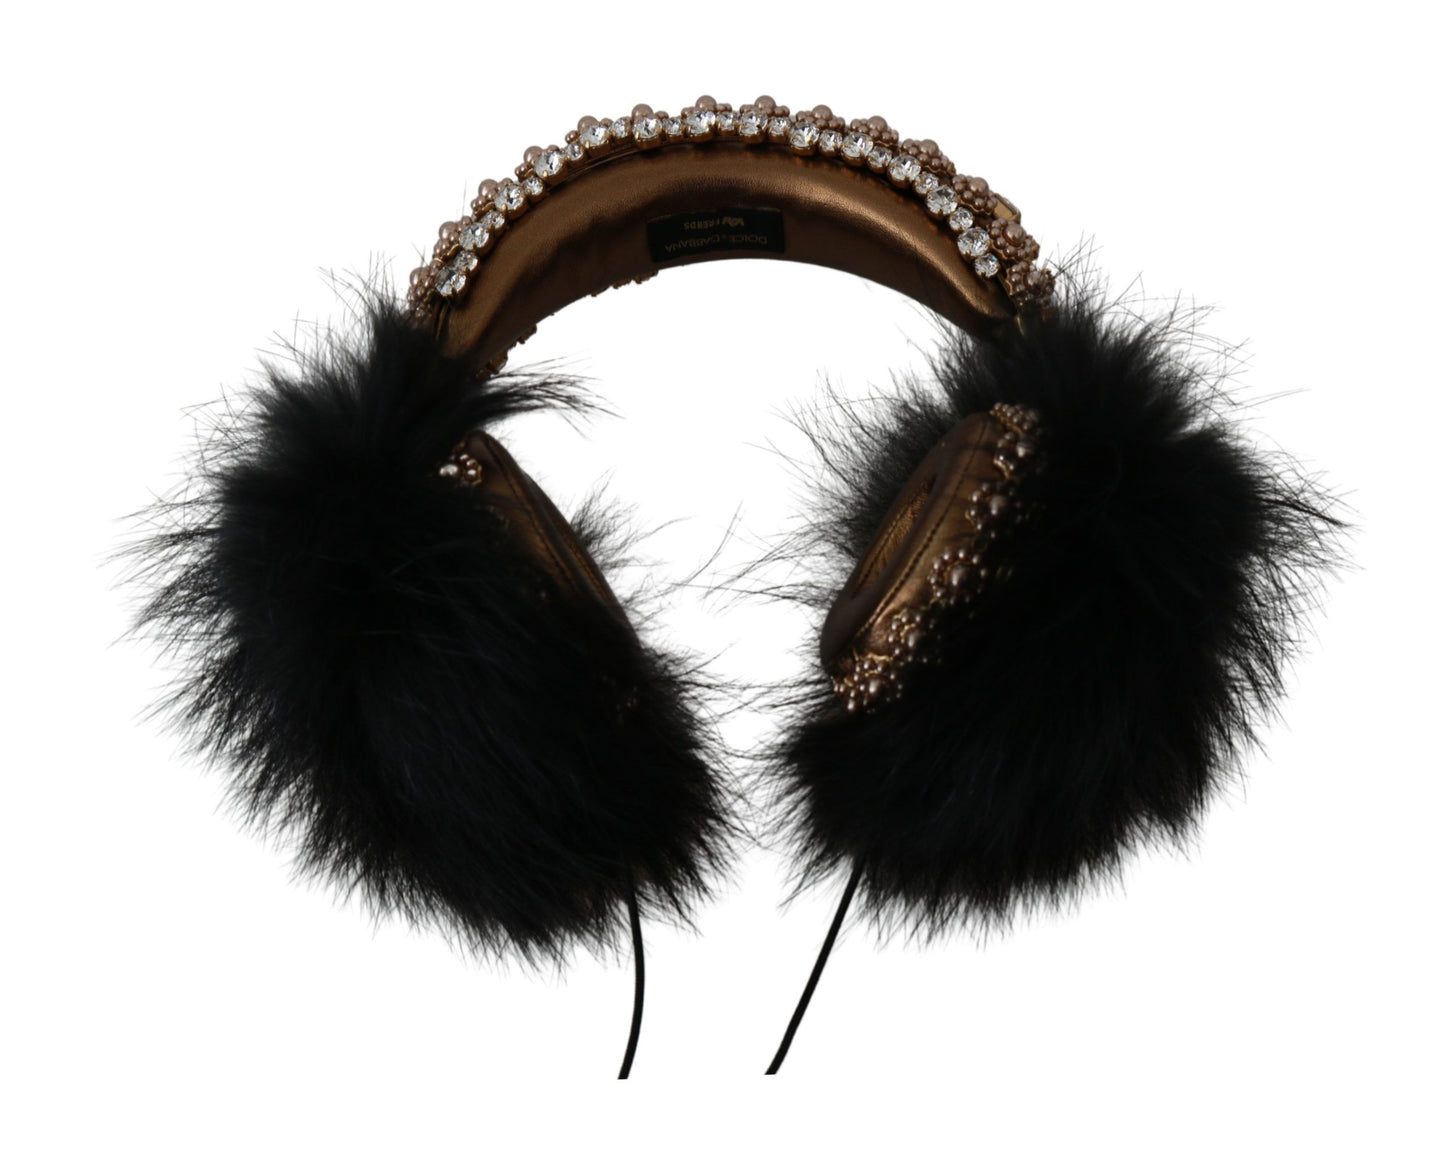 Dolce & Gabbana Gold Black Crystal Embellished Headphones